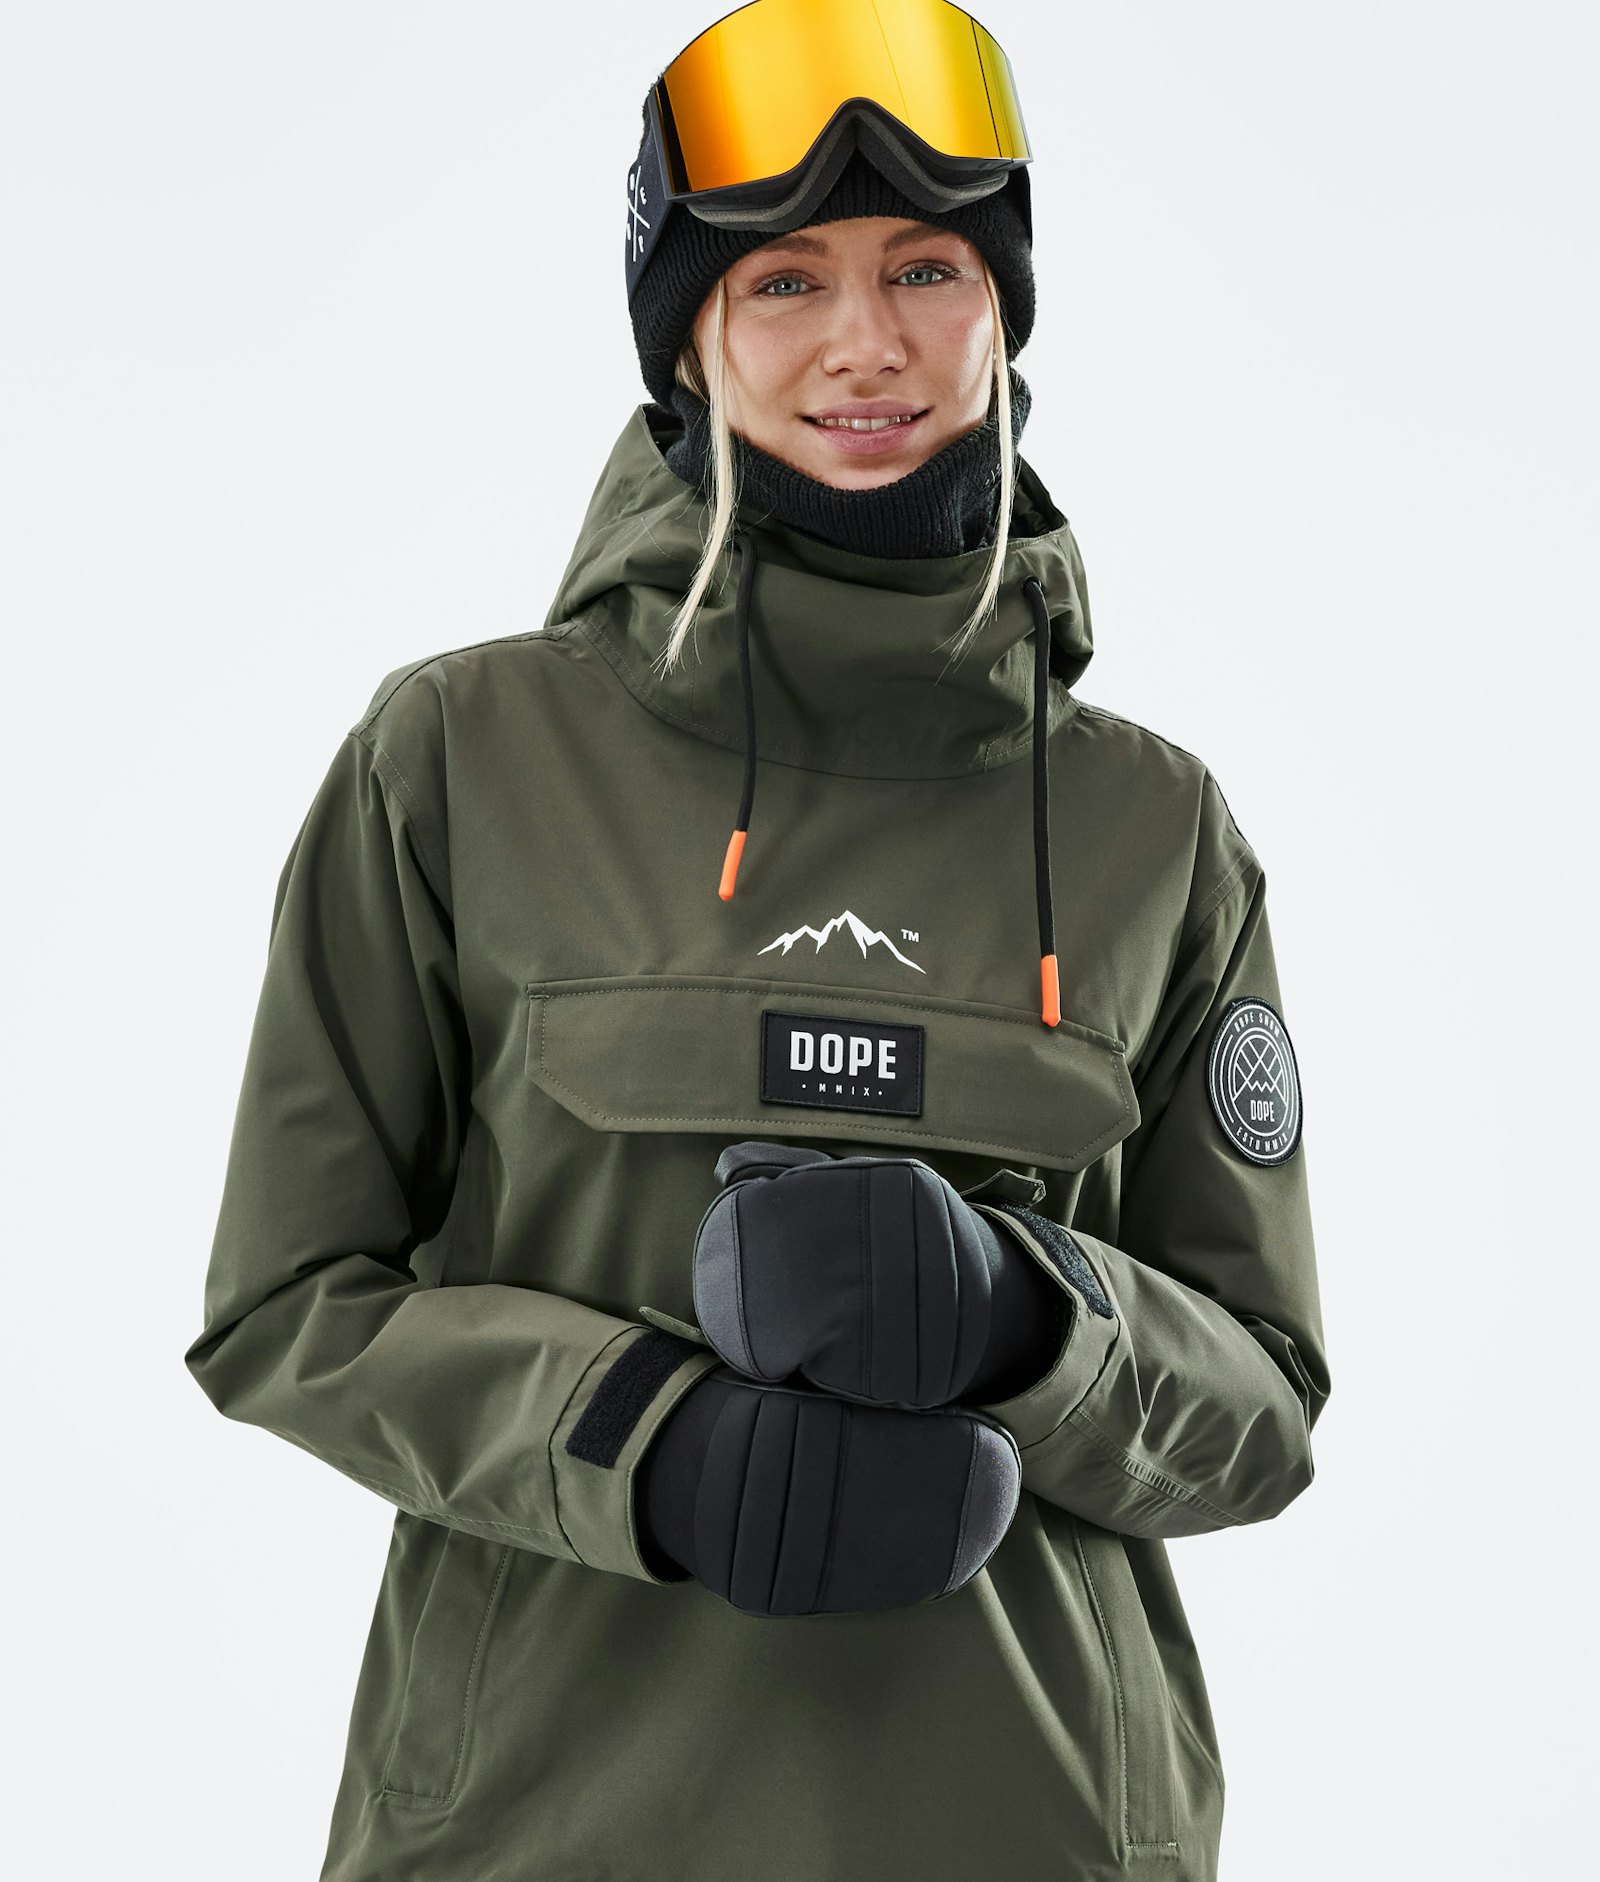 Dope Blizzard W 2021 Snowboard Jacket Women Olive Green Renewed